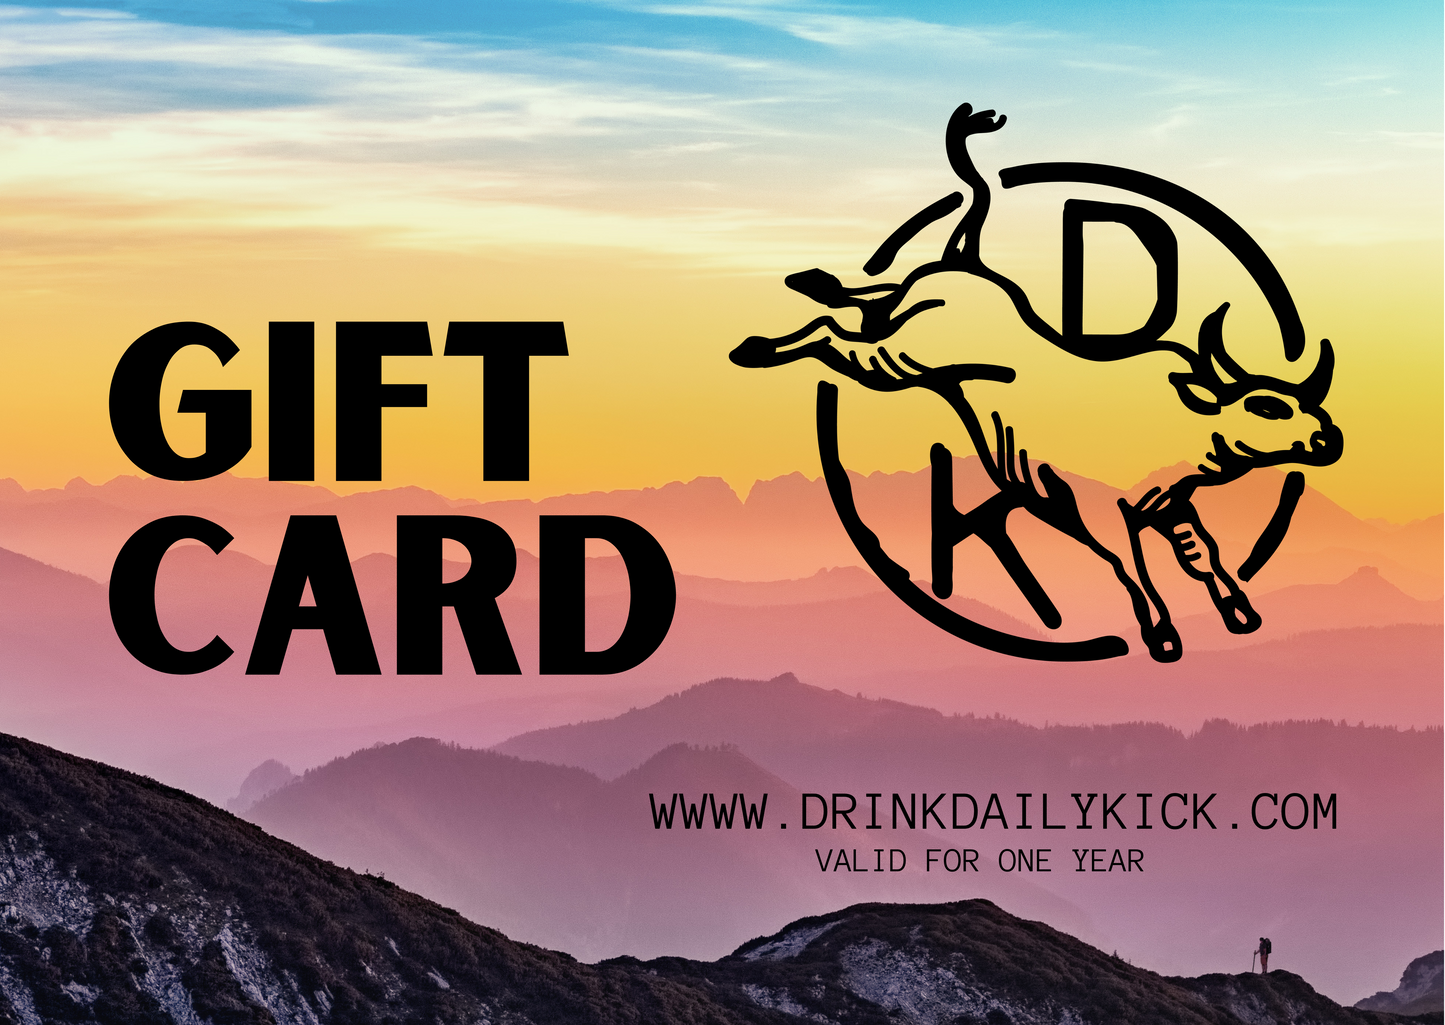 Daily Kick Gift Card